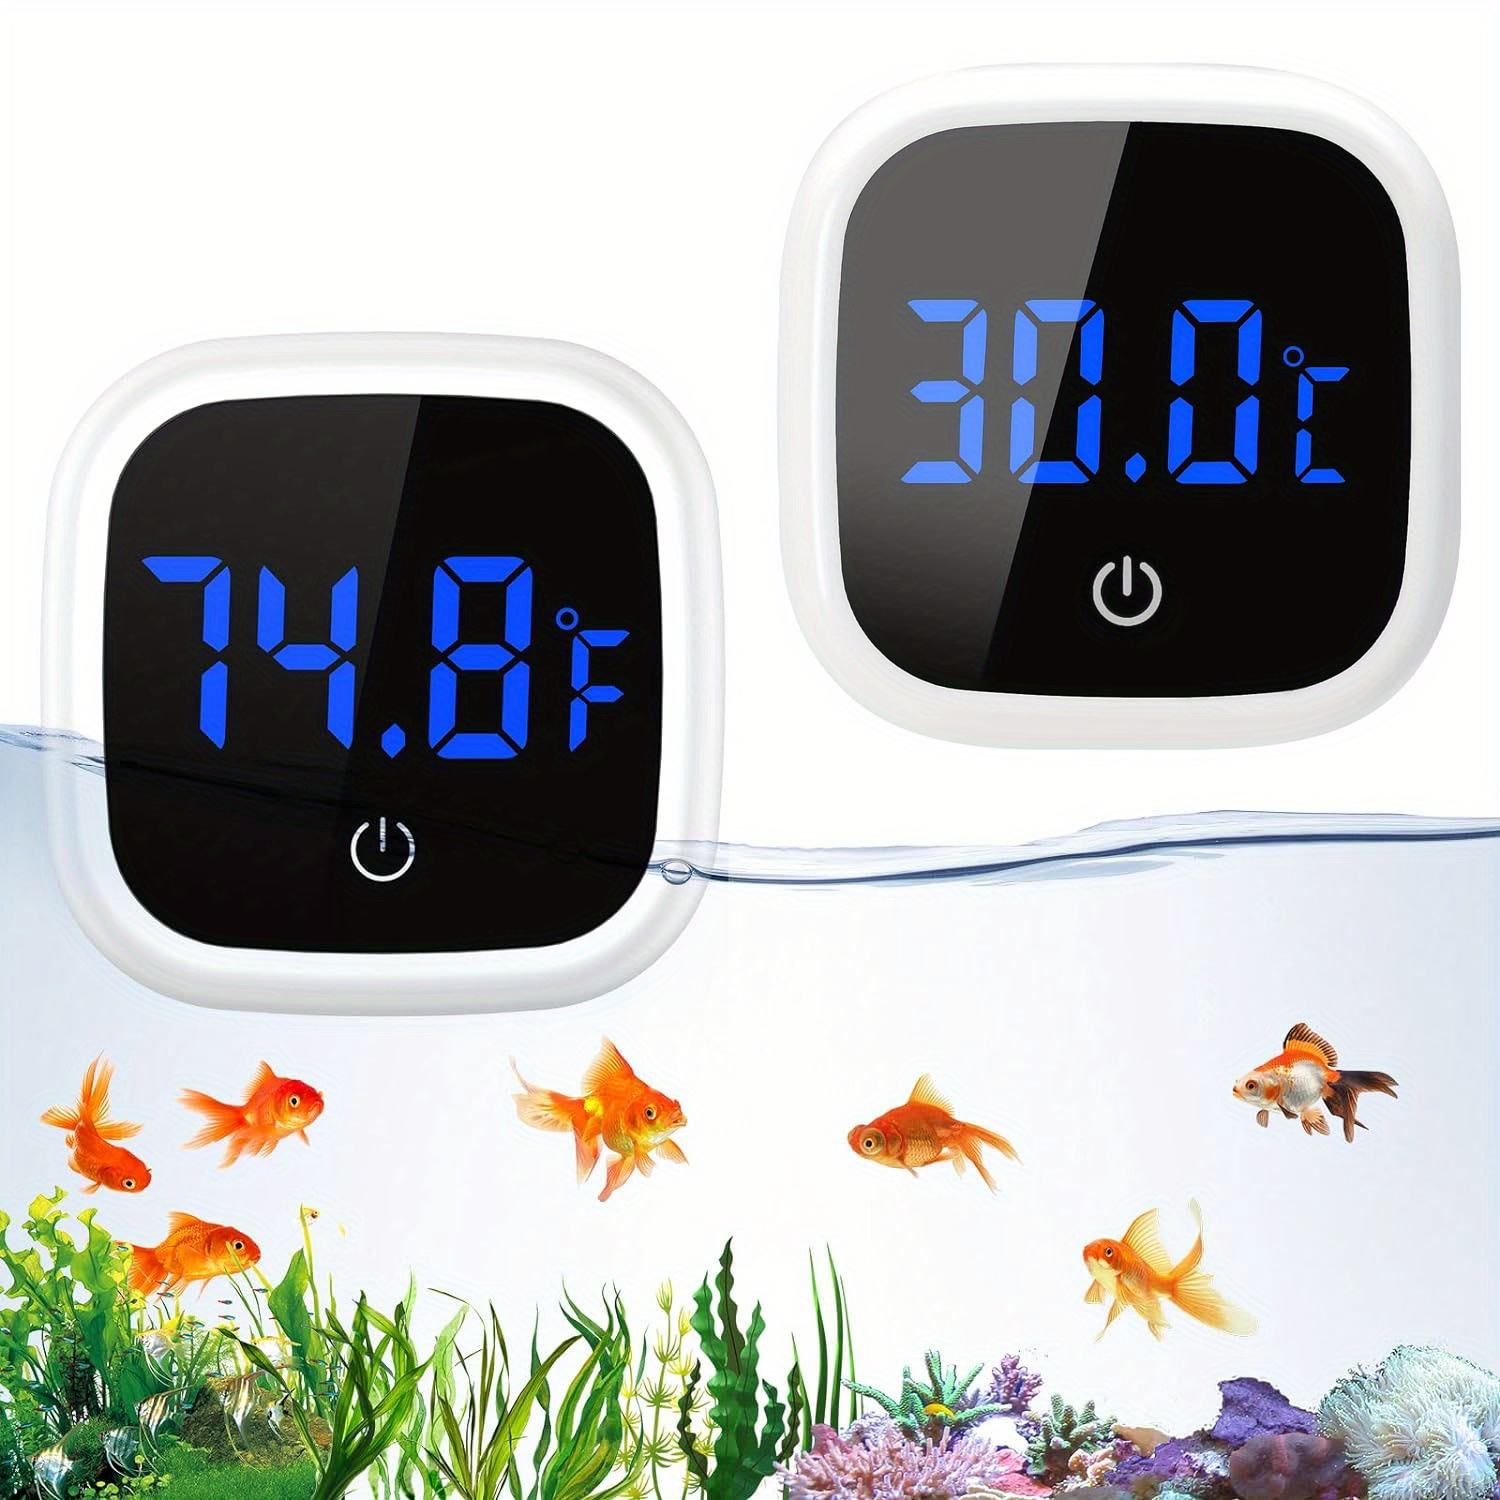 Digital aquarium thermometer with adjustable alarm